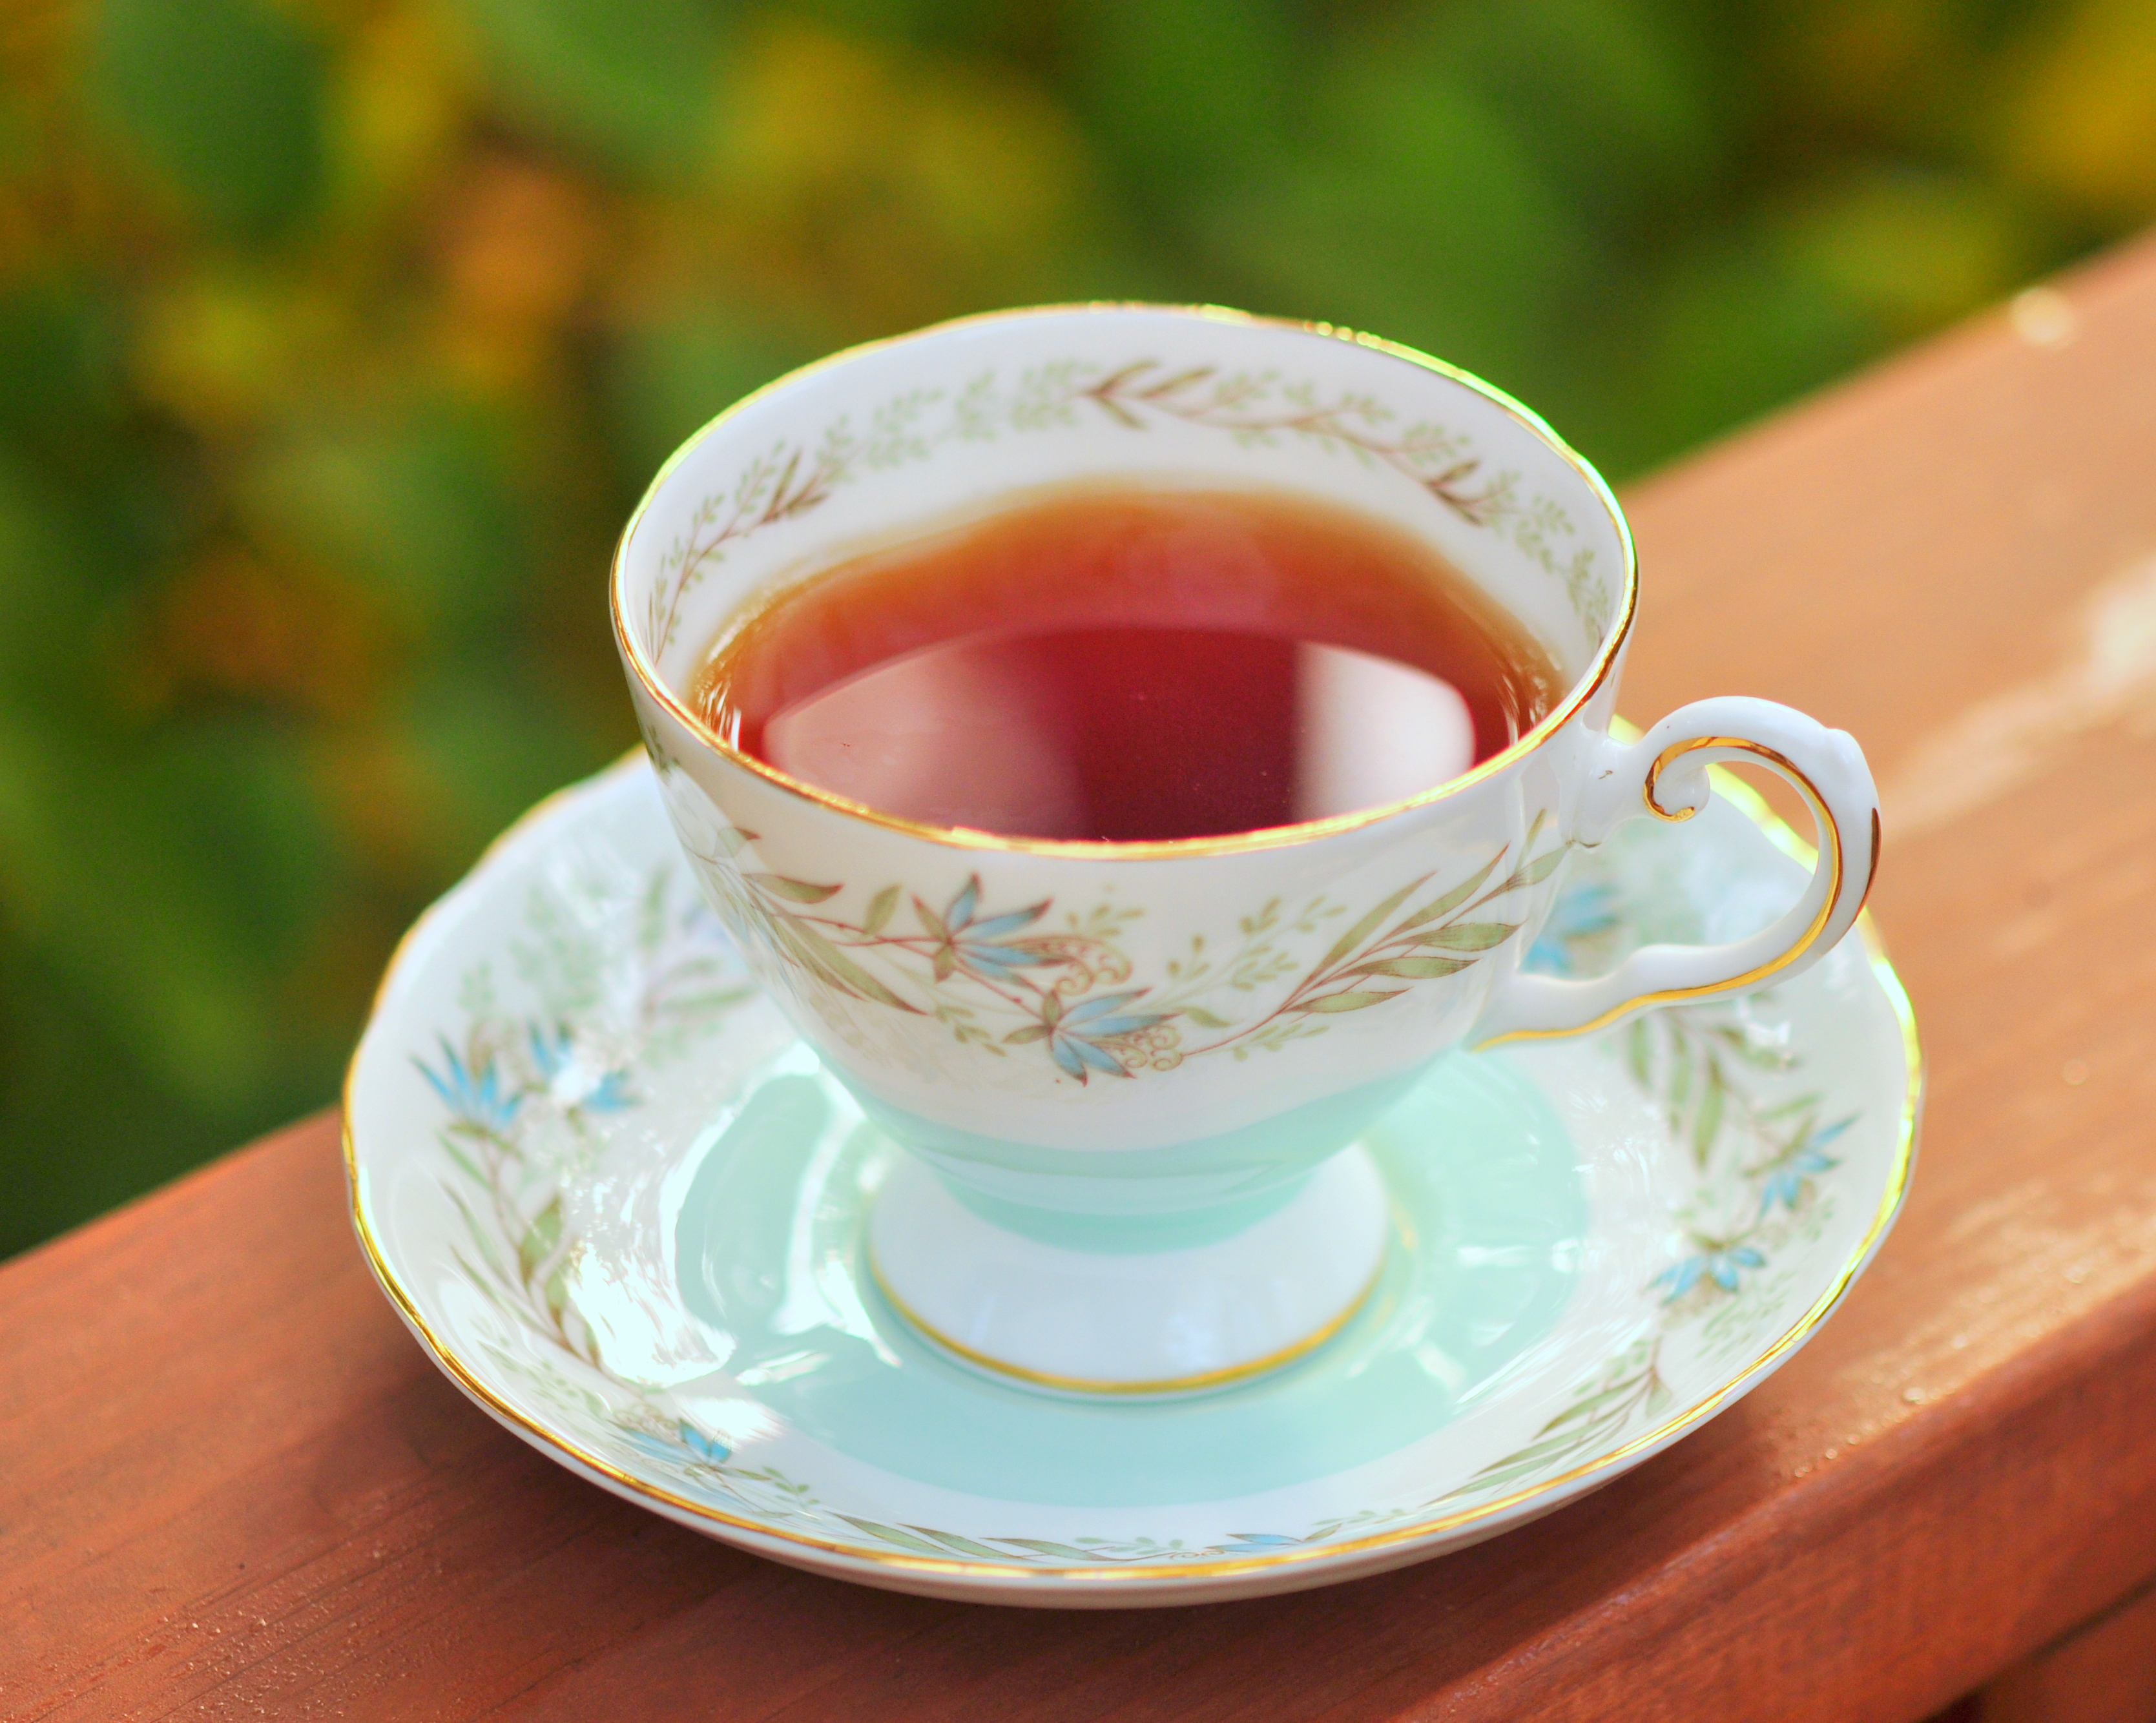 Покажи картинки чая. Кружка чай. Чашка с чаем. Чай в кружке. Красивые чашки для чая.